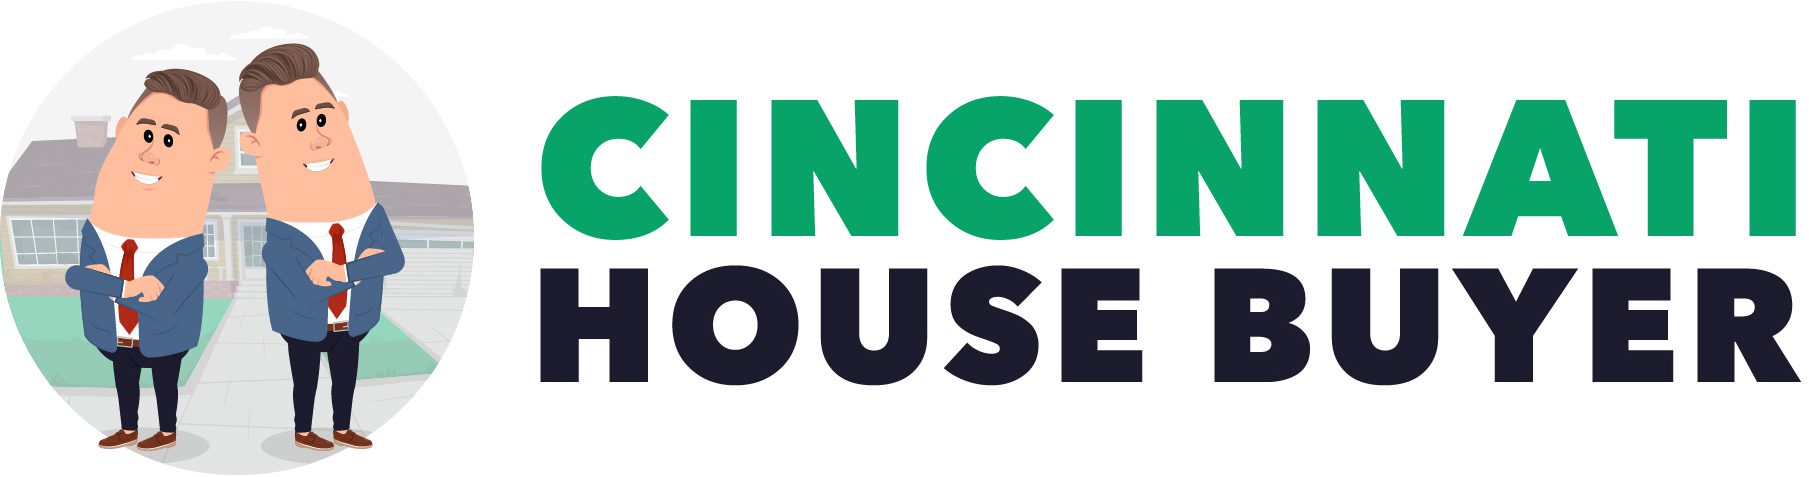 We Buy Houses for Cash in Cincinnati Logo